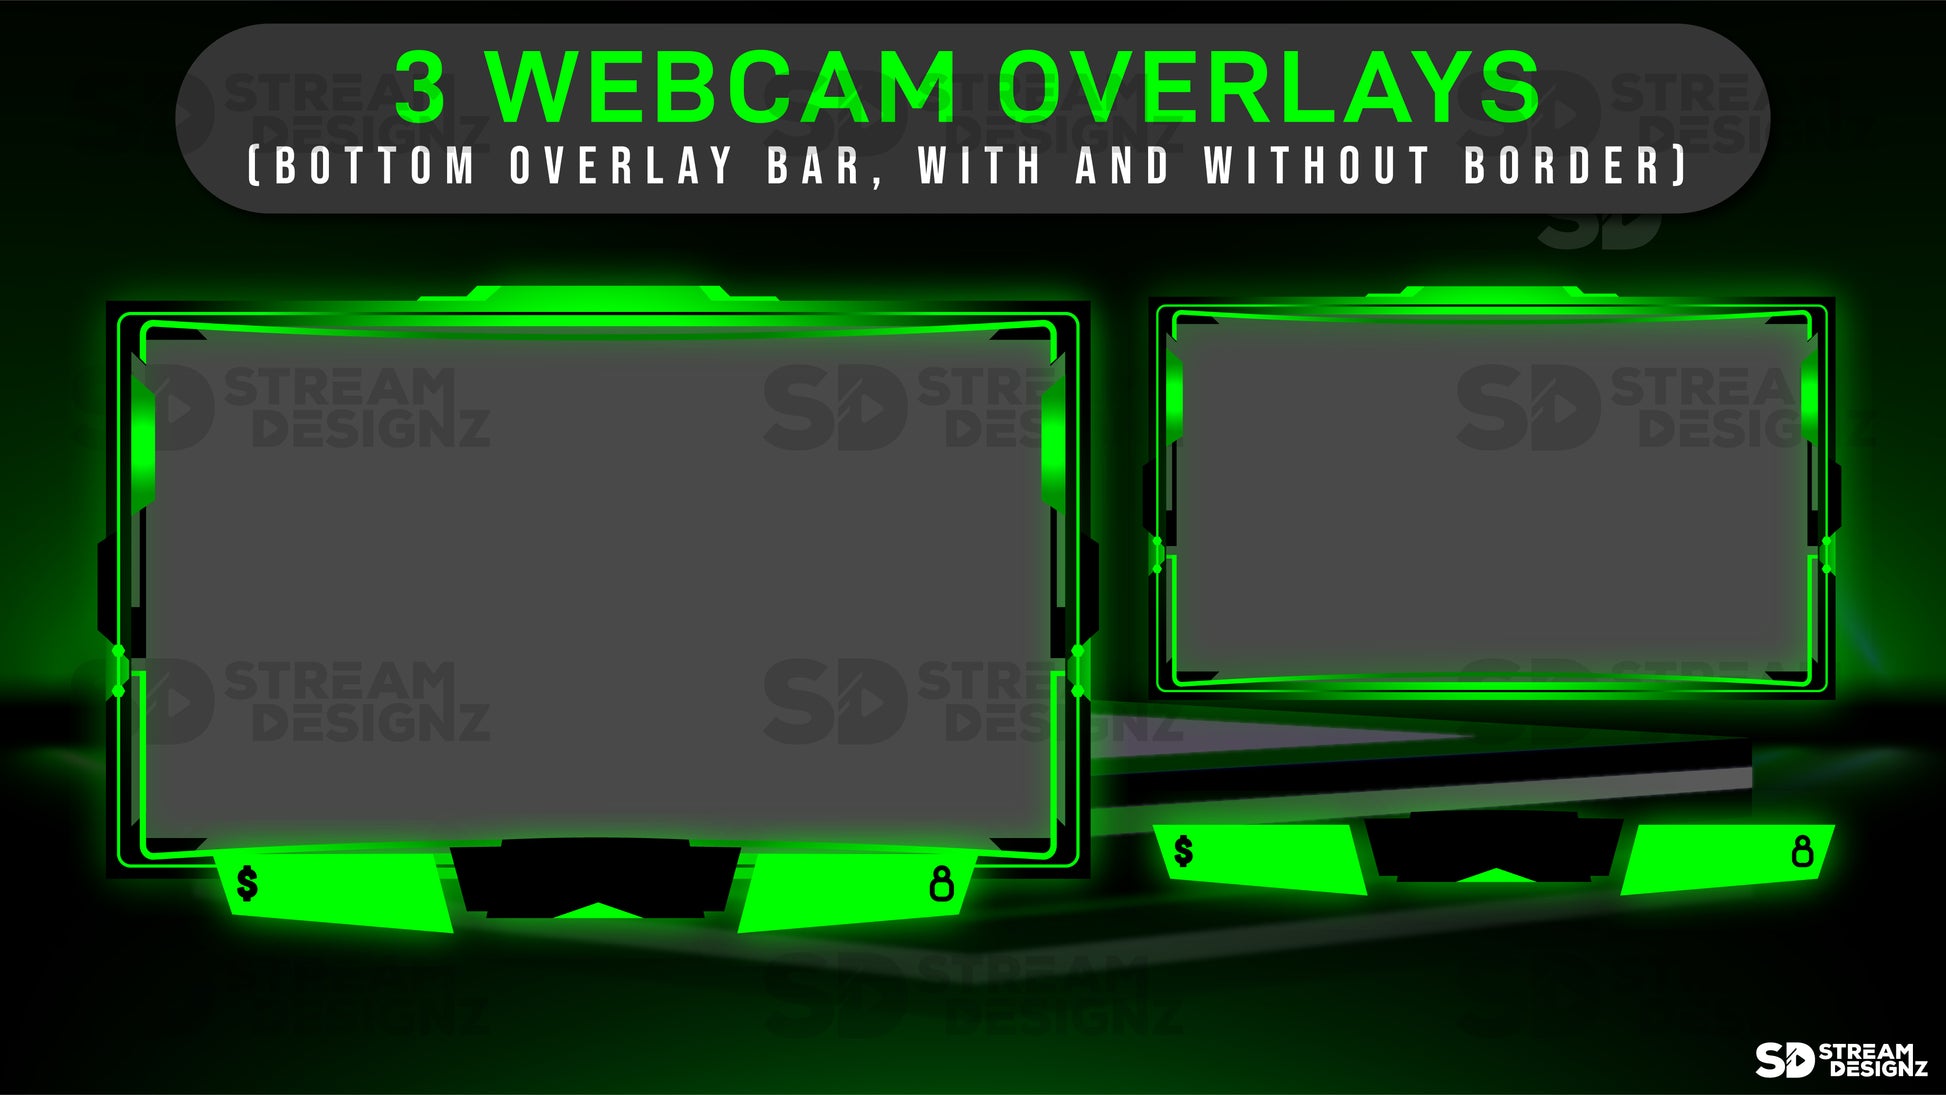 Static stream overlay package vortex webcam overlays stream designz